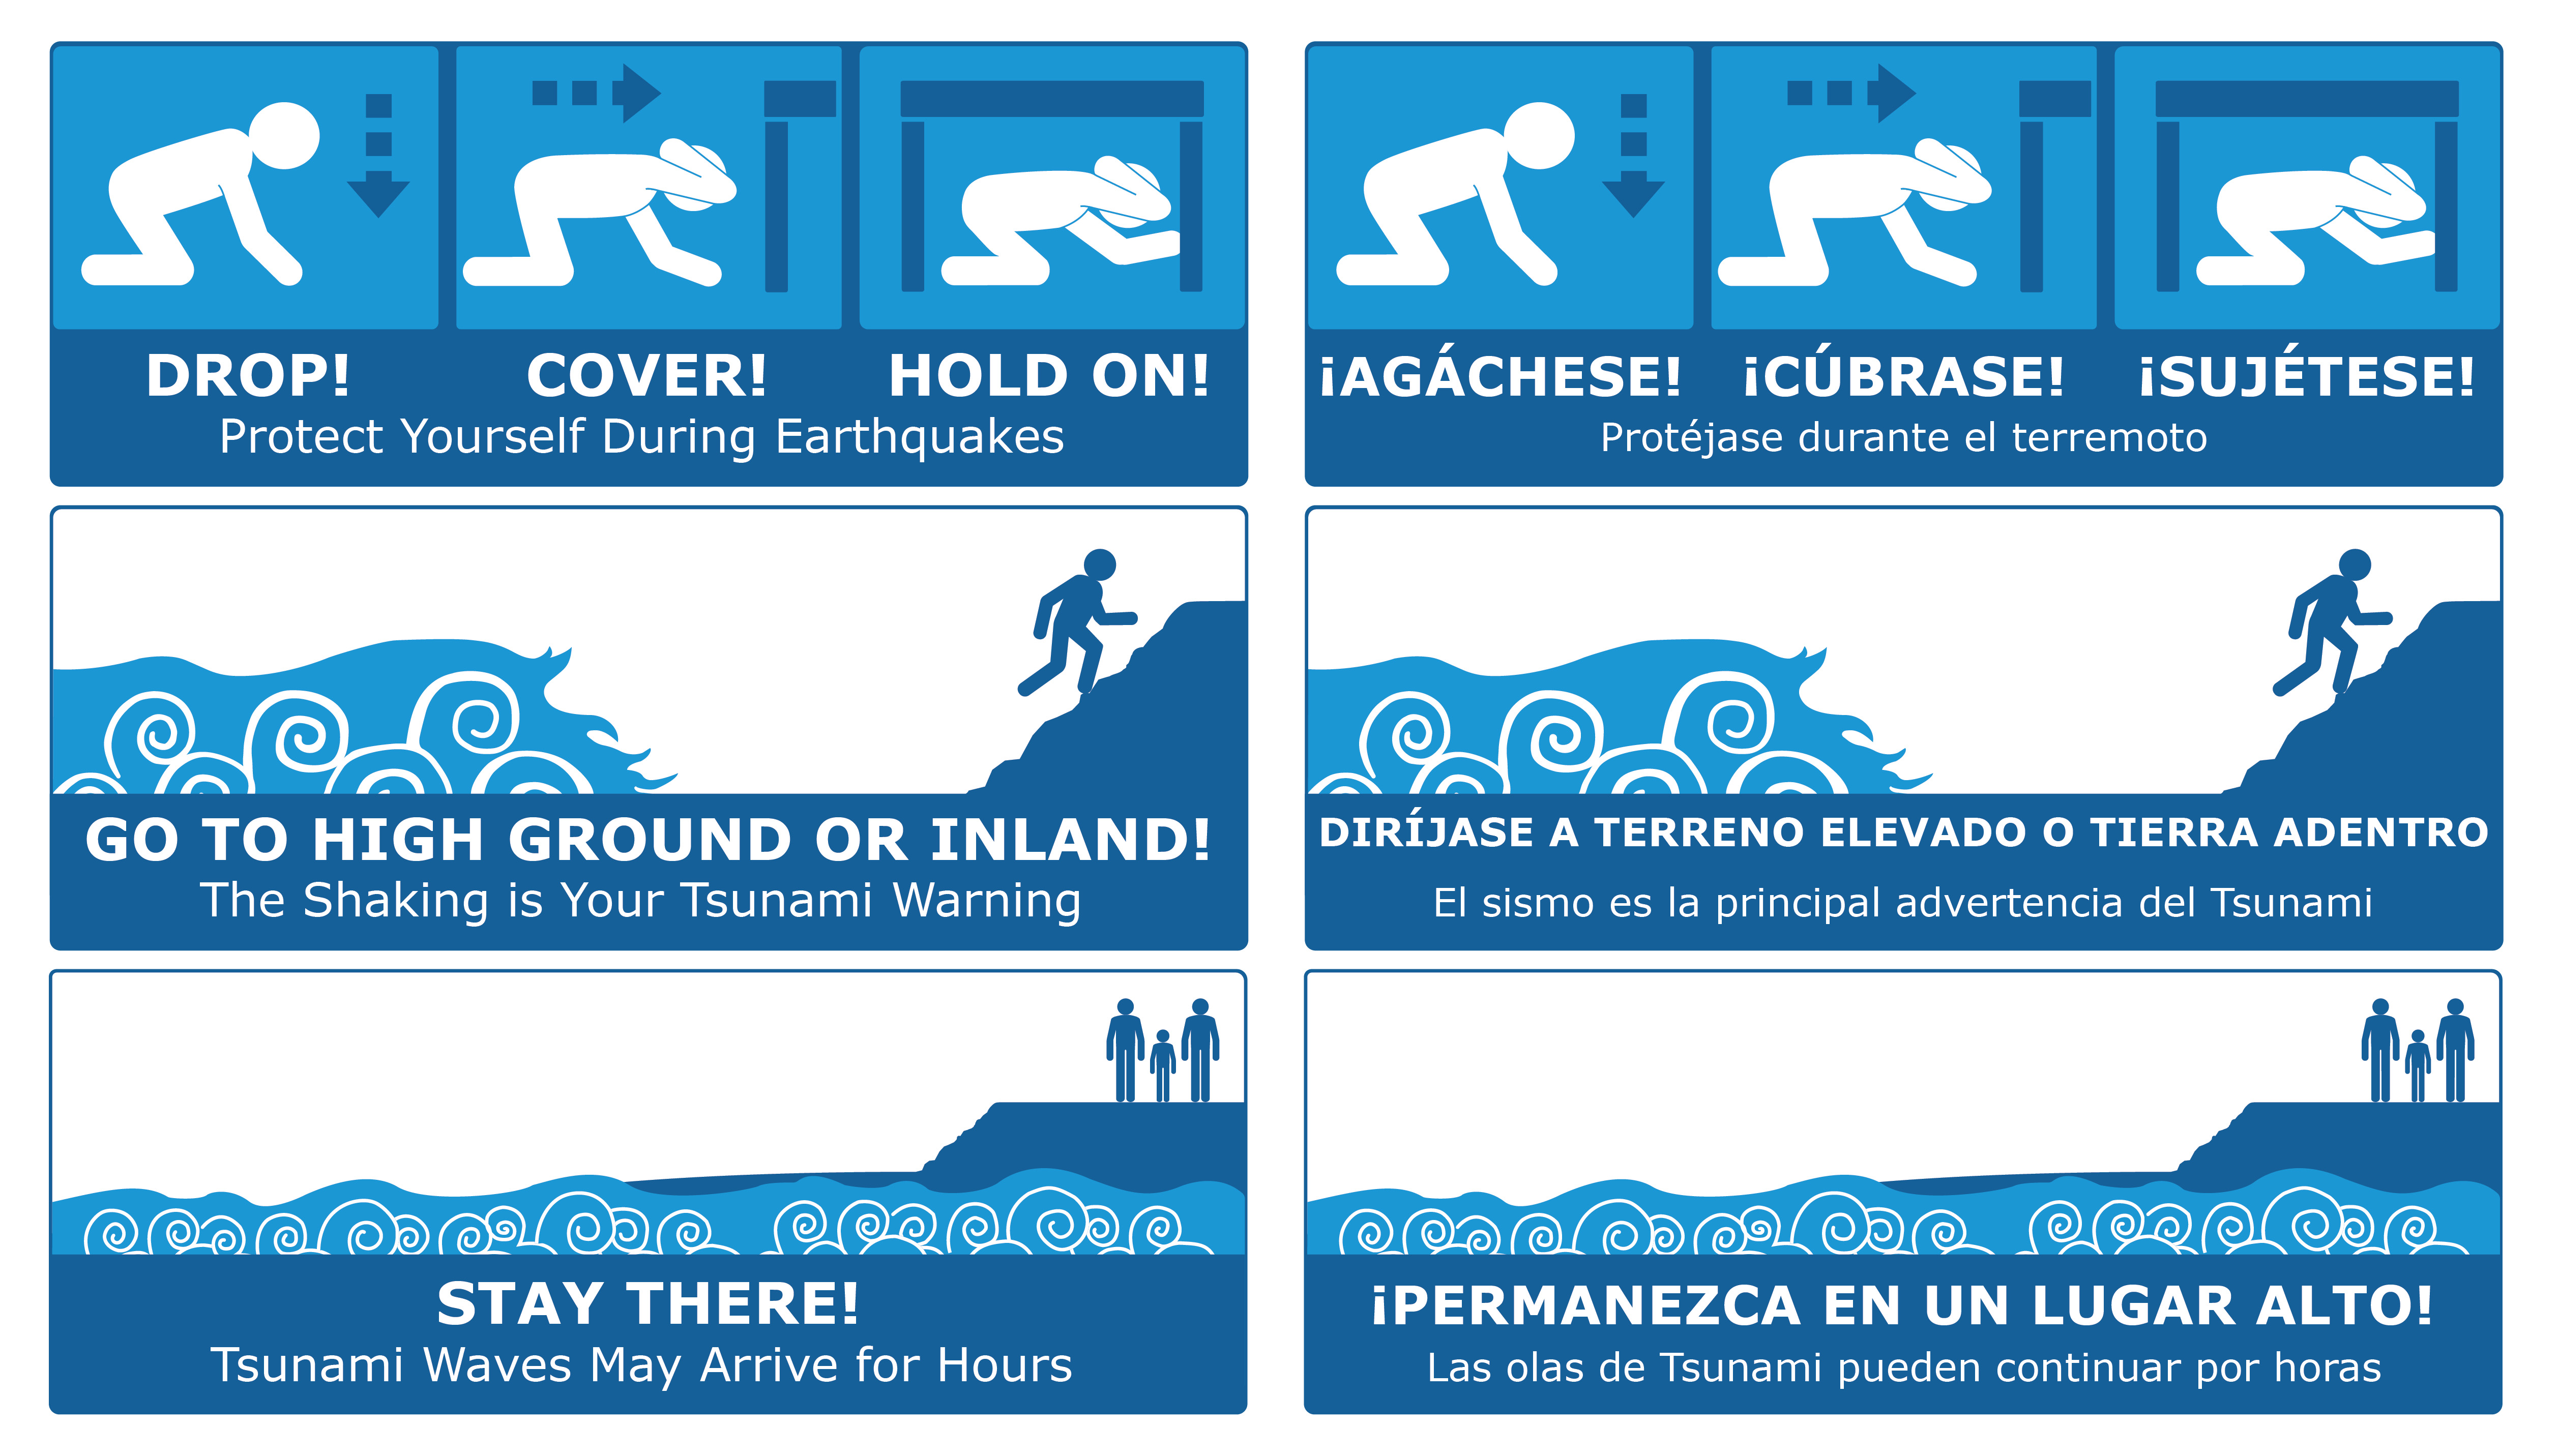 Unpredictability, potential damage complicate tsunami preparedness plans